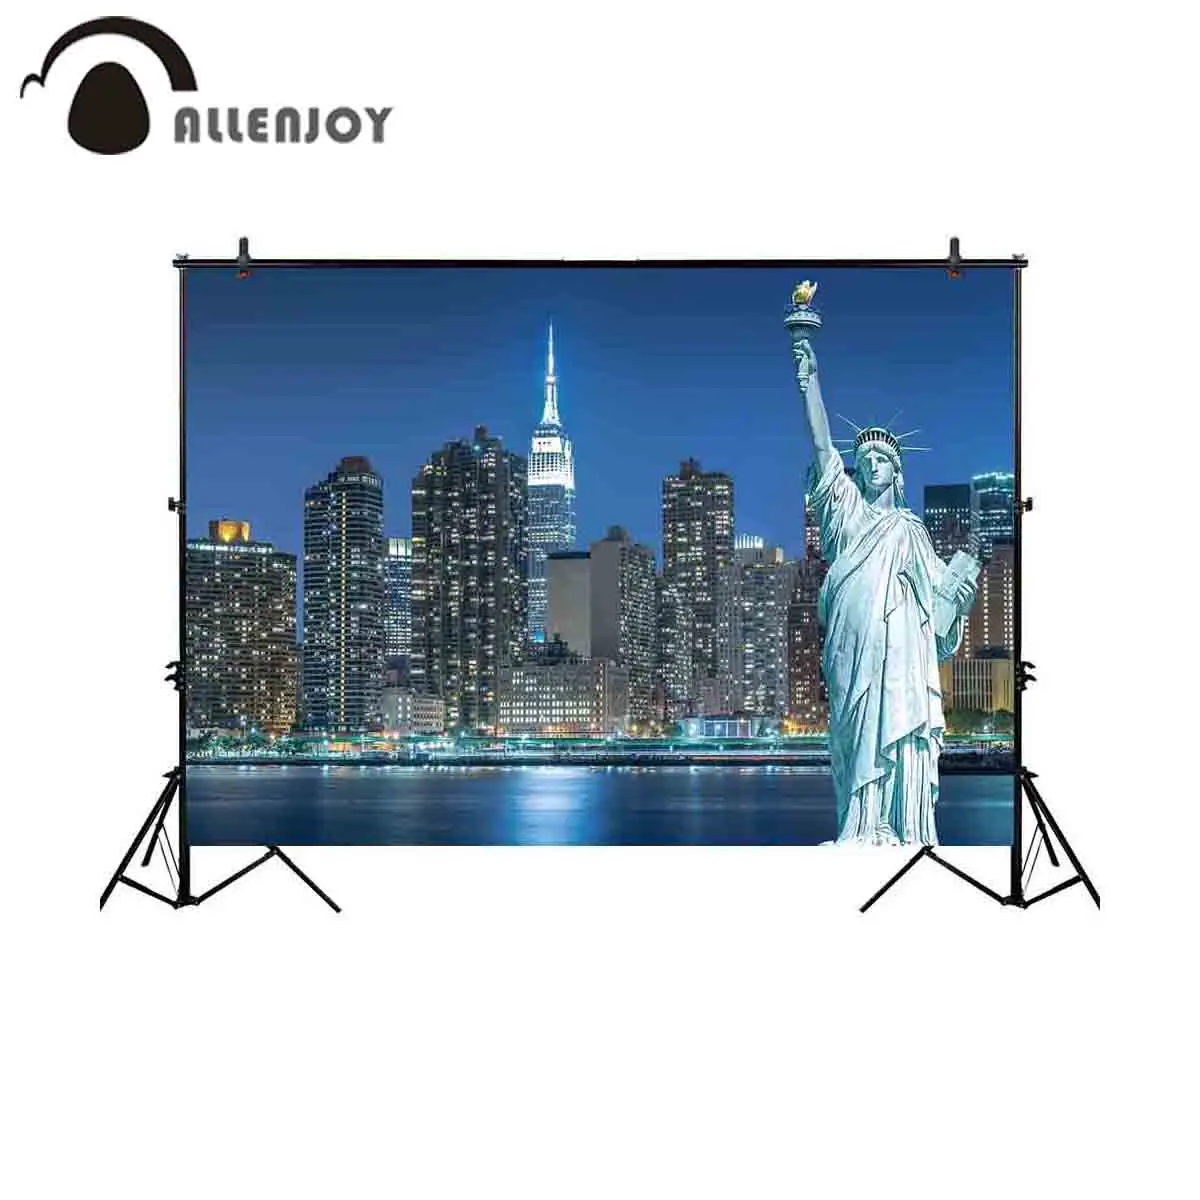 Allenjoy Нью-Йорк фон для фото ночного города Статуя Свободы фон фотосессия Опора photocall photobooth ткань